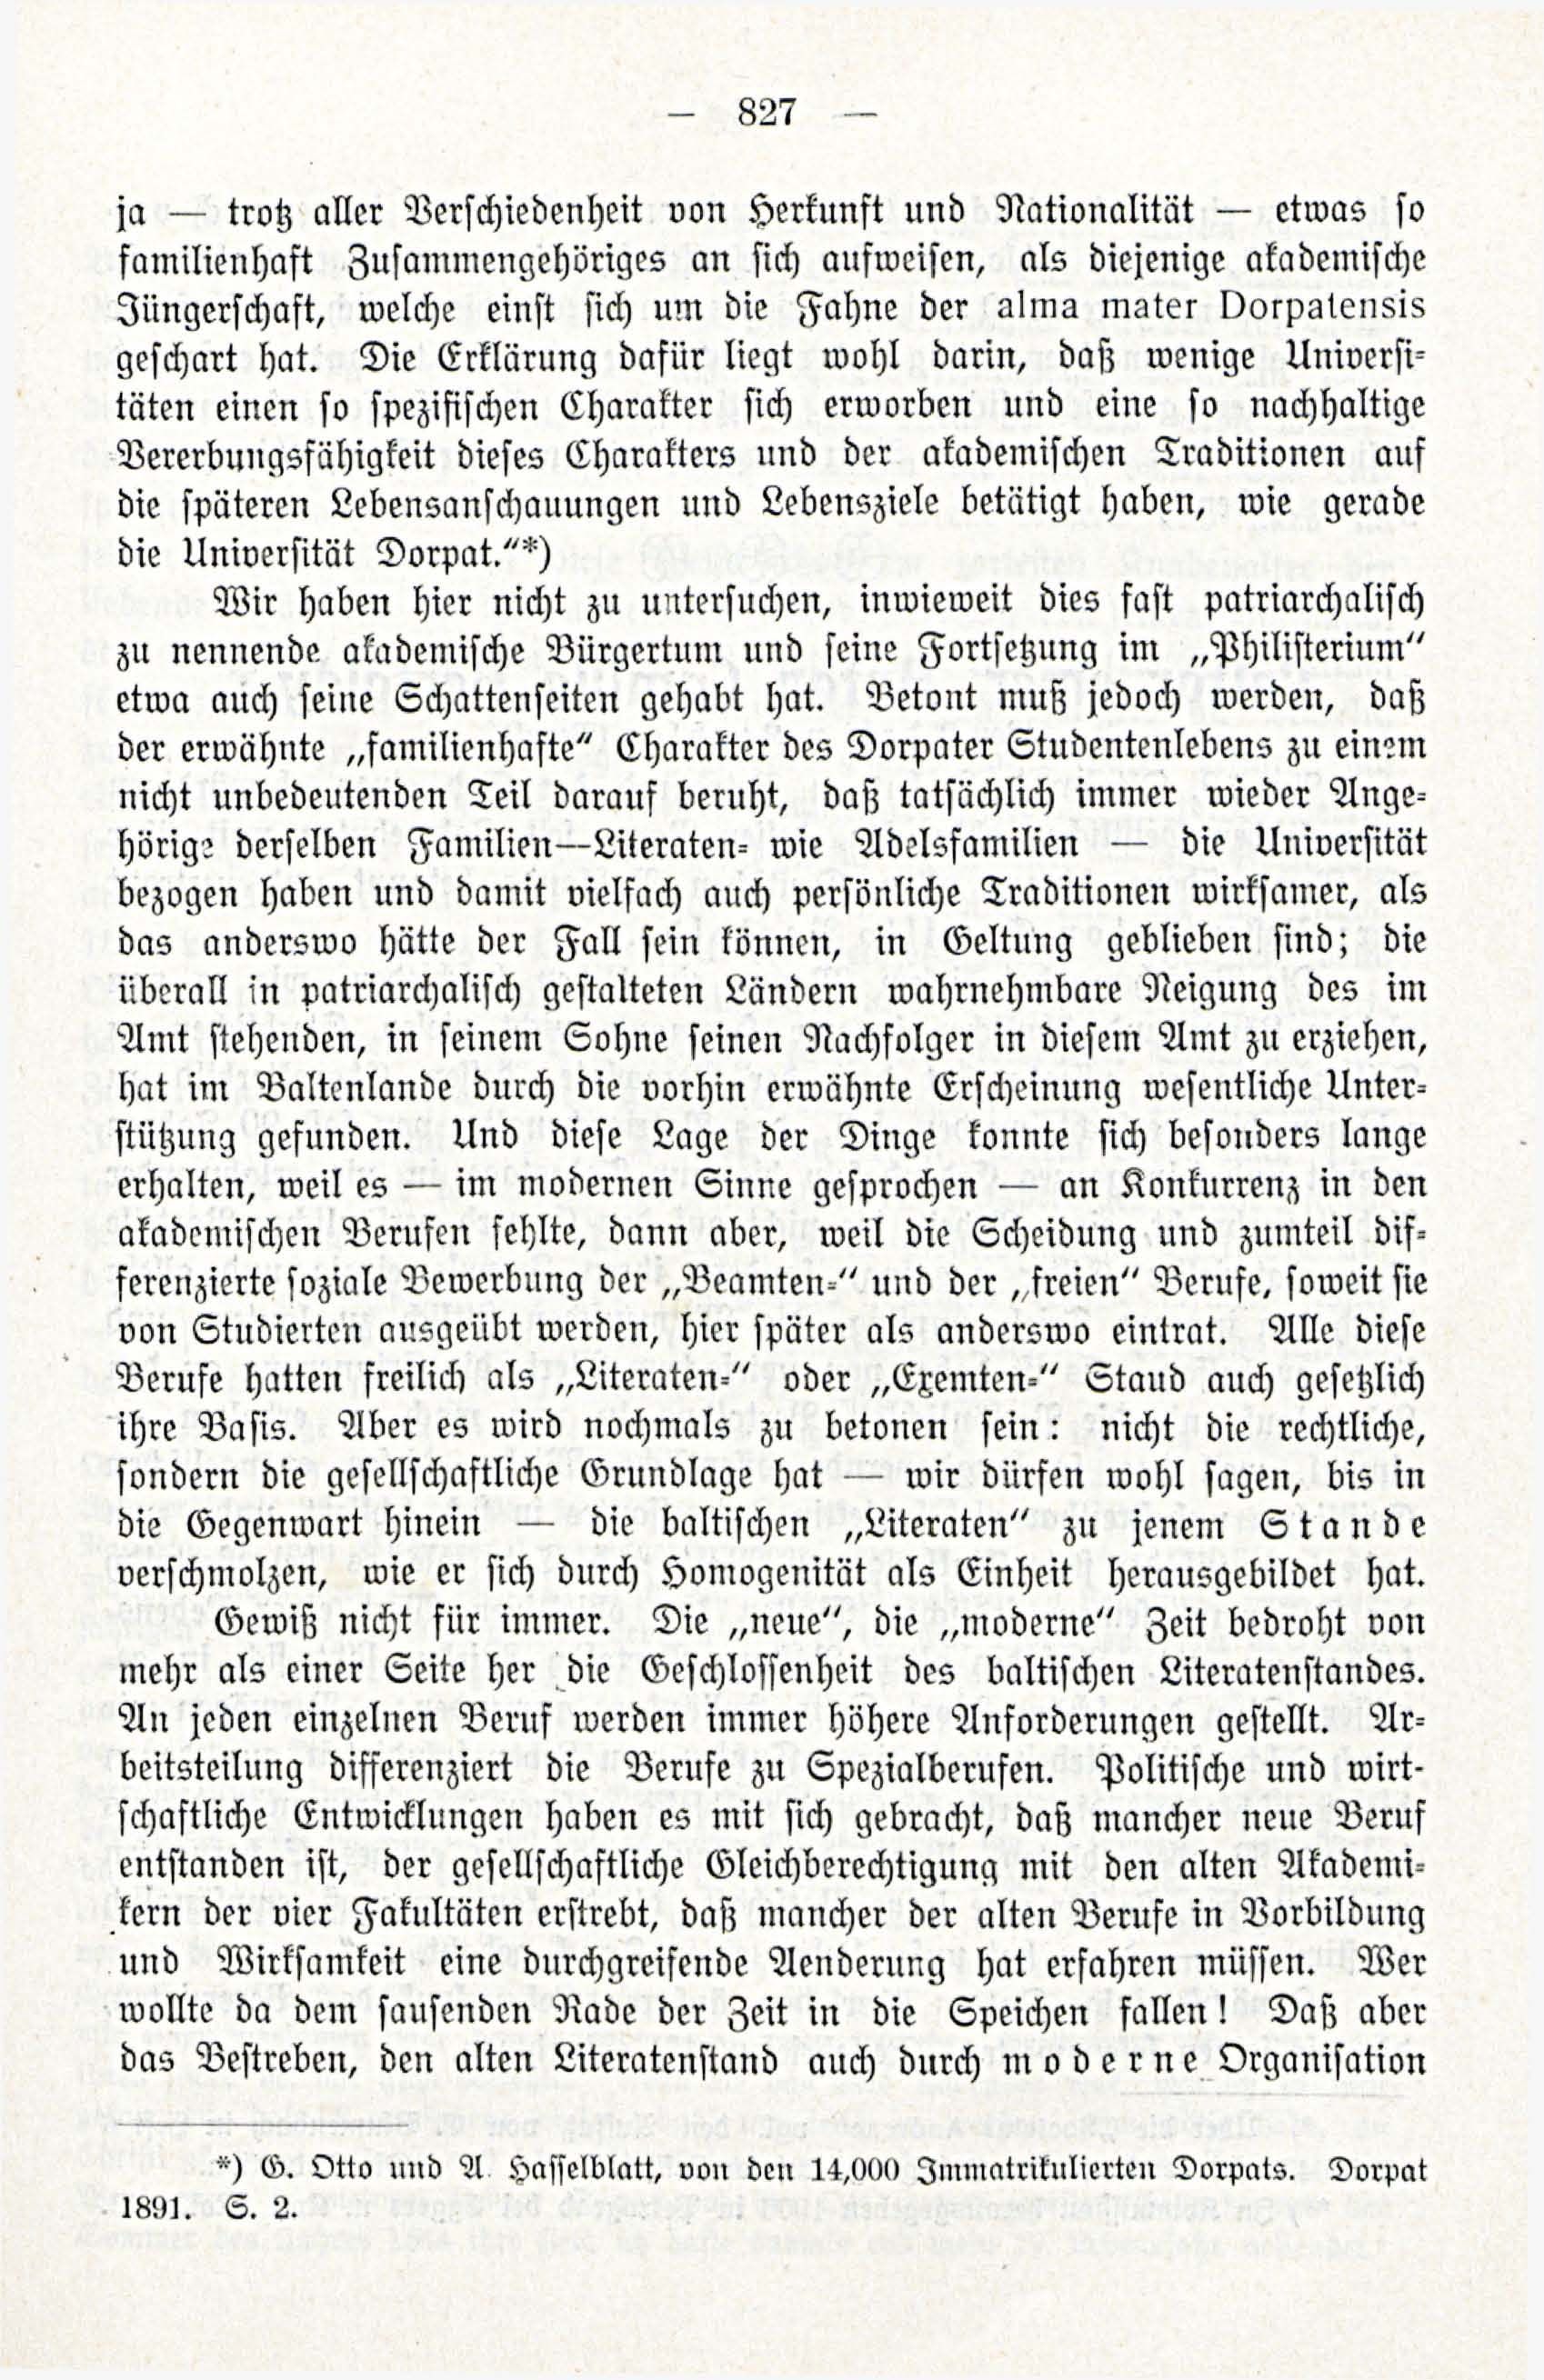 Deutsche Monatsschrift für Russland [3/12] (1914) | 43. (827) Main body of text